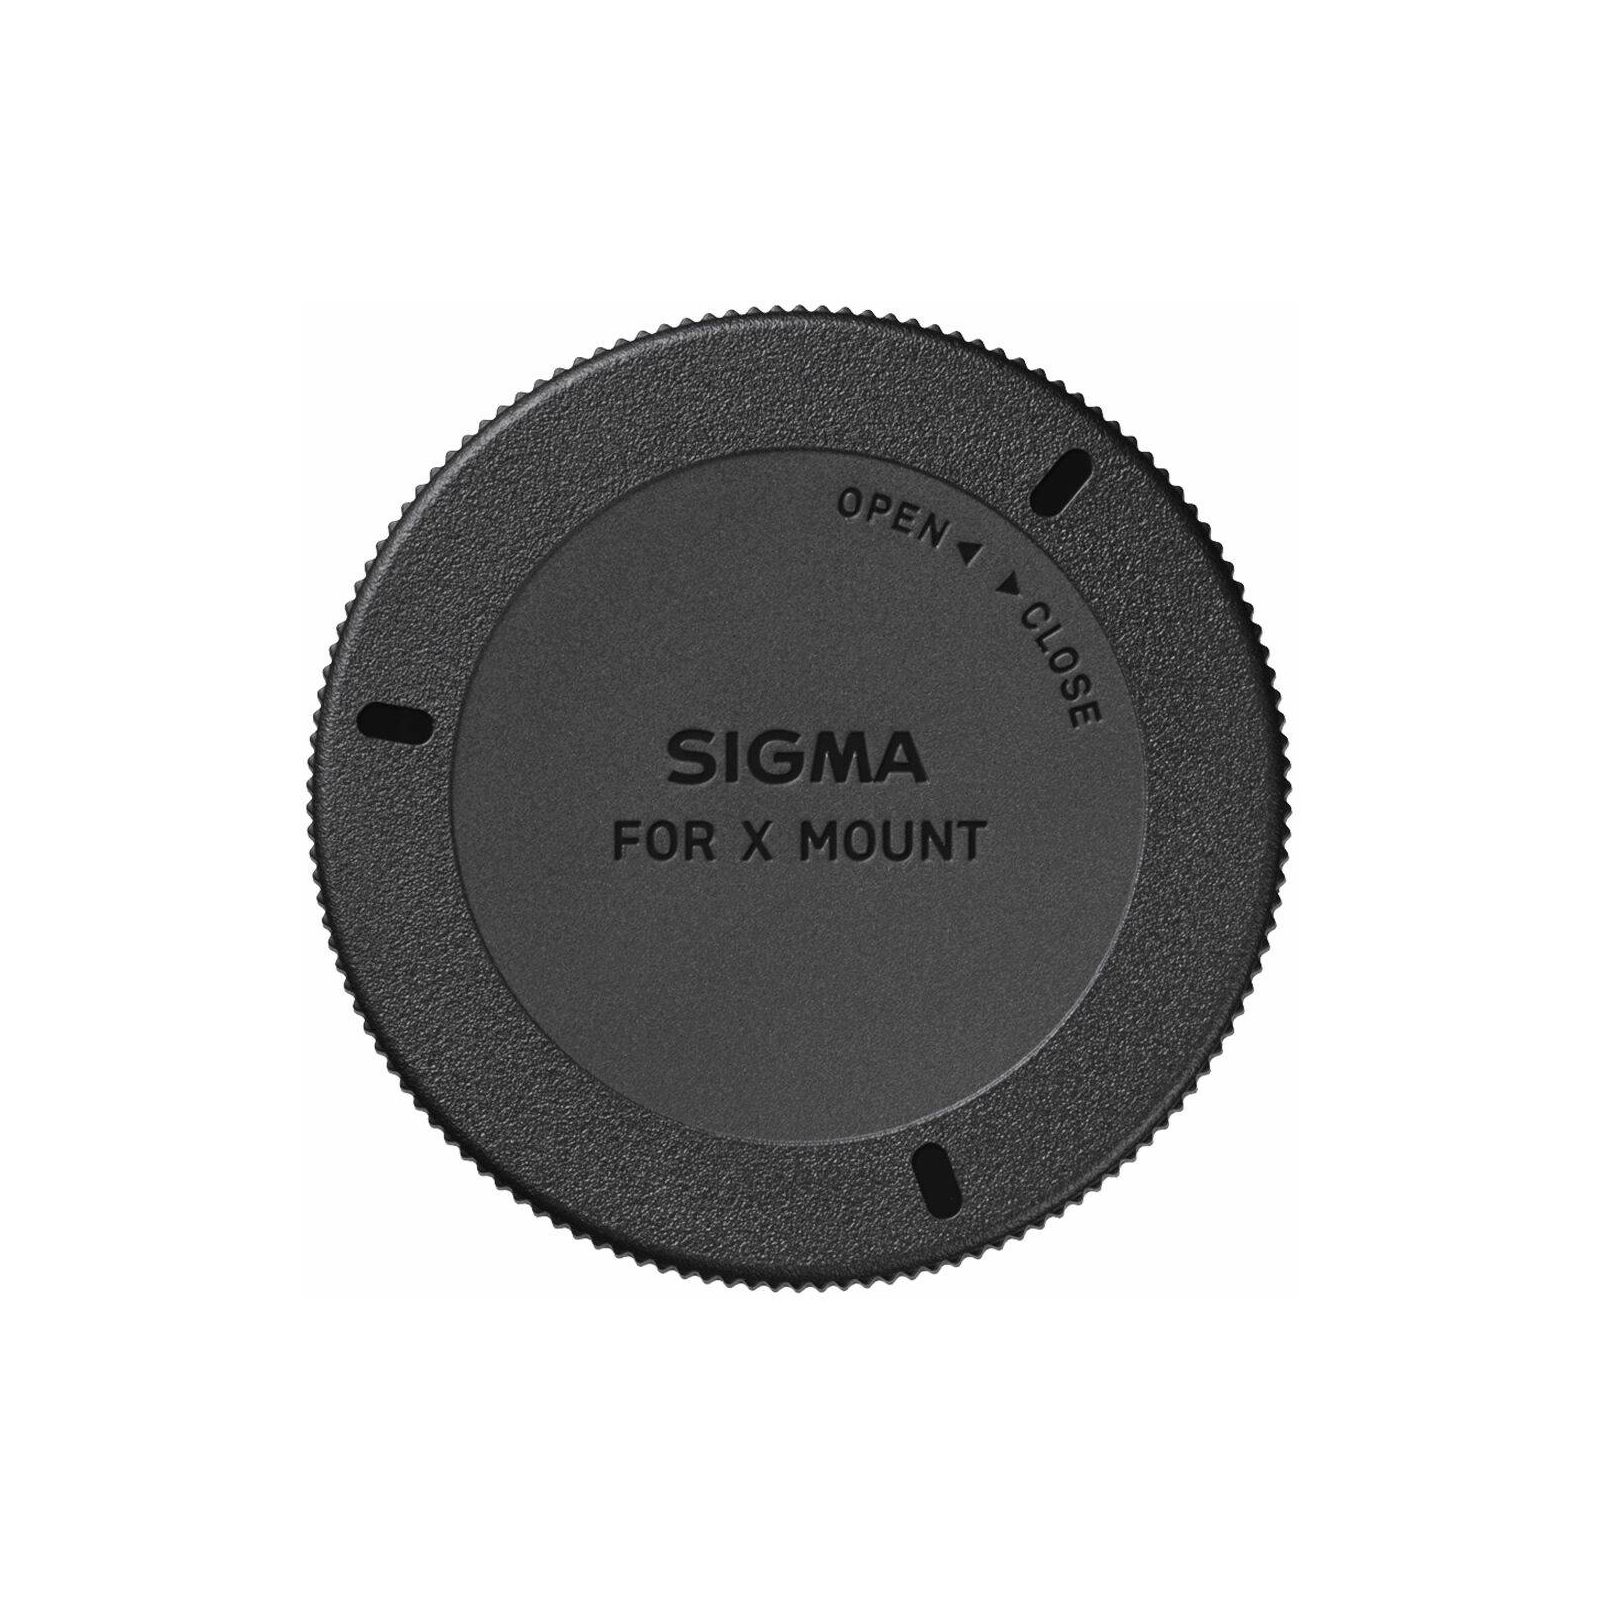 Sigma 23mm f/1.4 DC DN Contemporary objektiv za Fuji X-mount